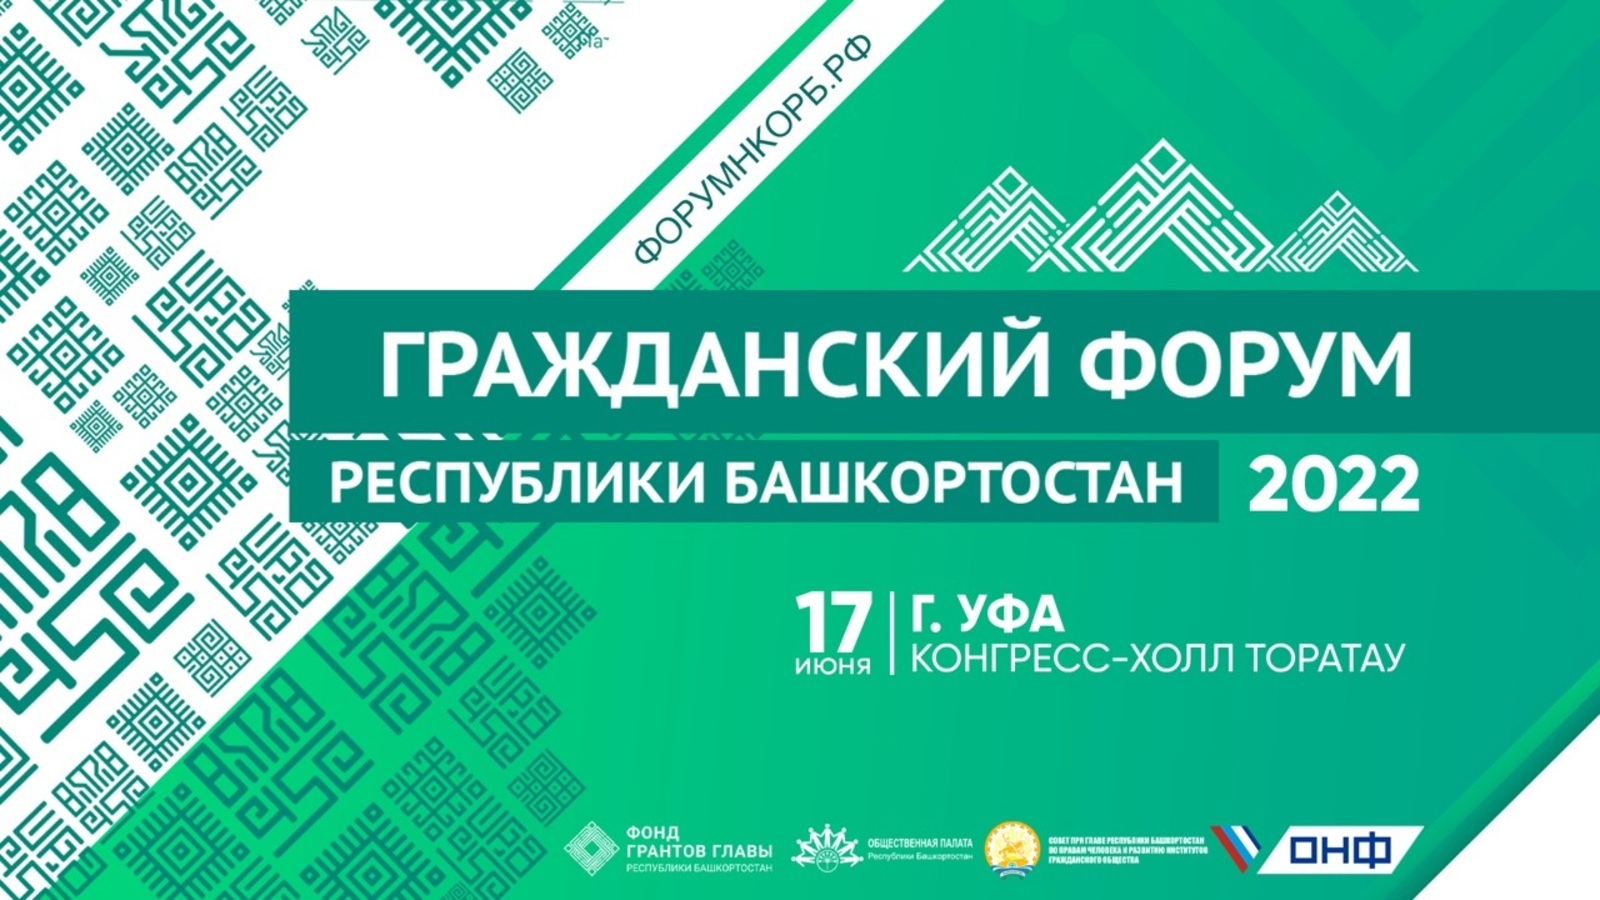 17 июня 2022 года в Уфе в «Конгресс-холл «Торатау» состоится Гражданский форум Республики Башкортостан